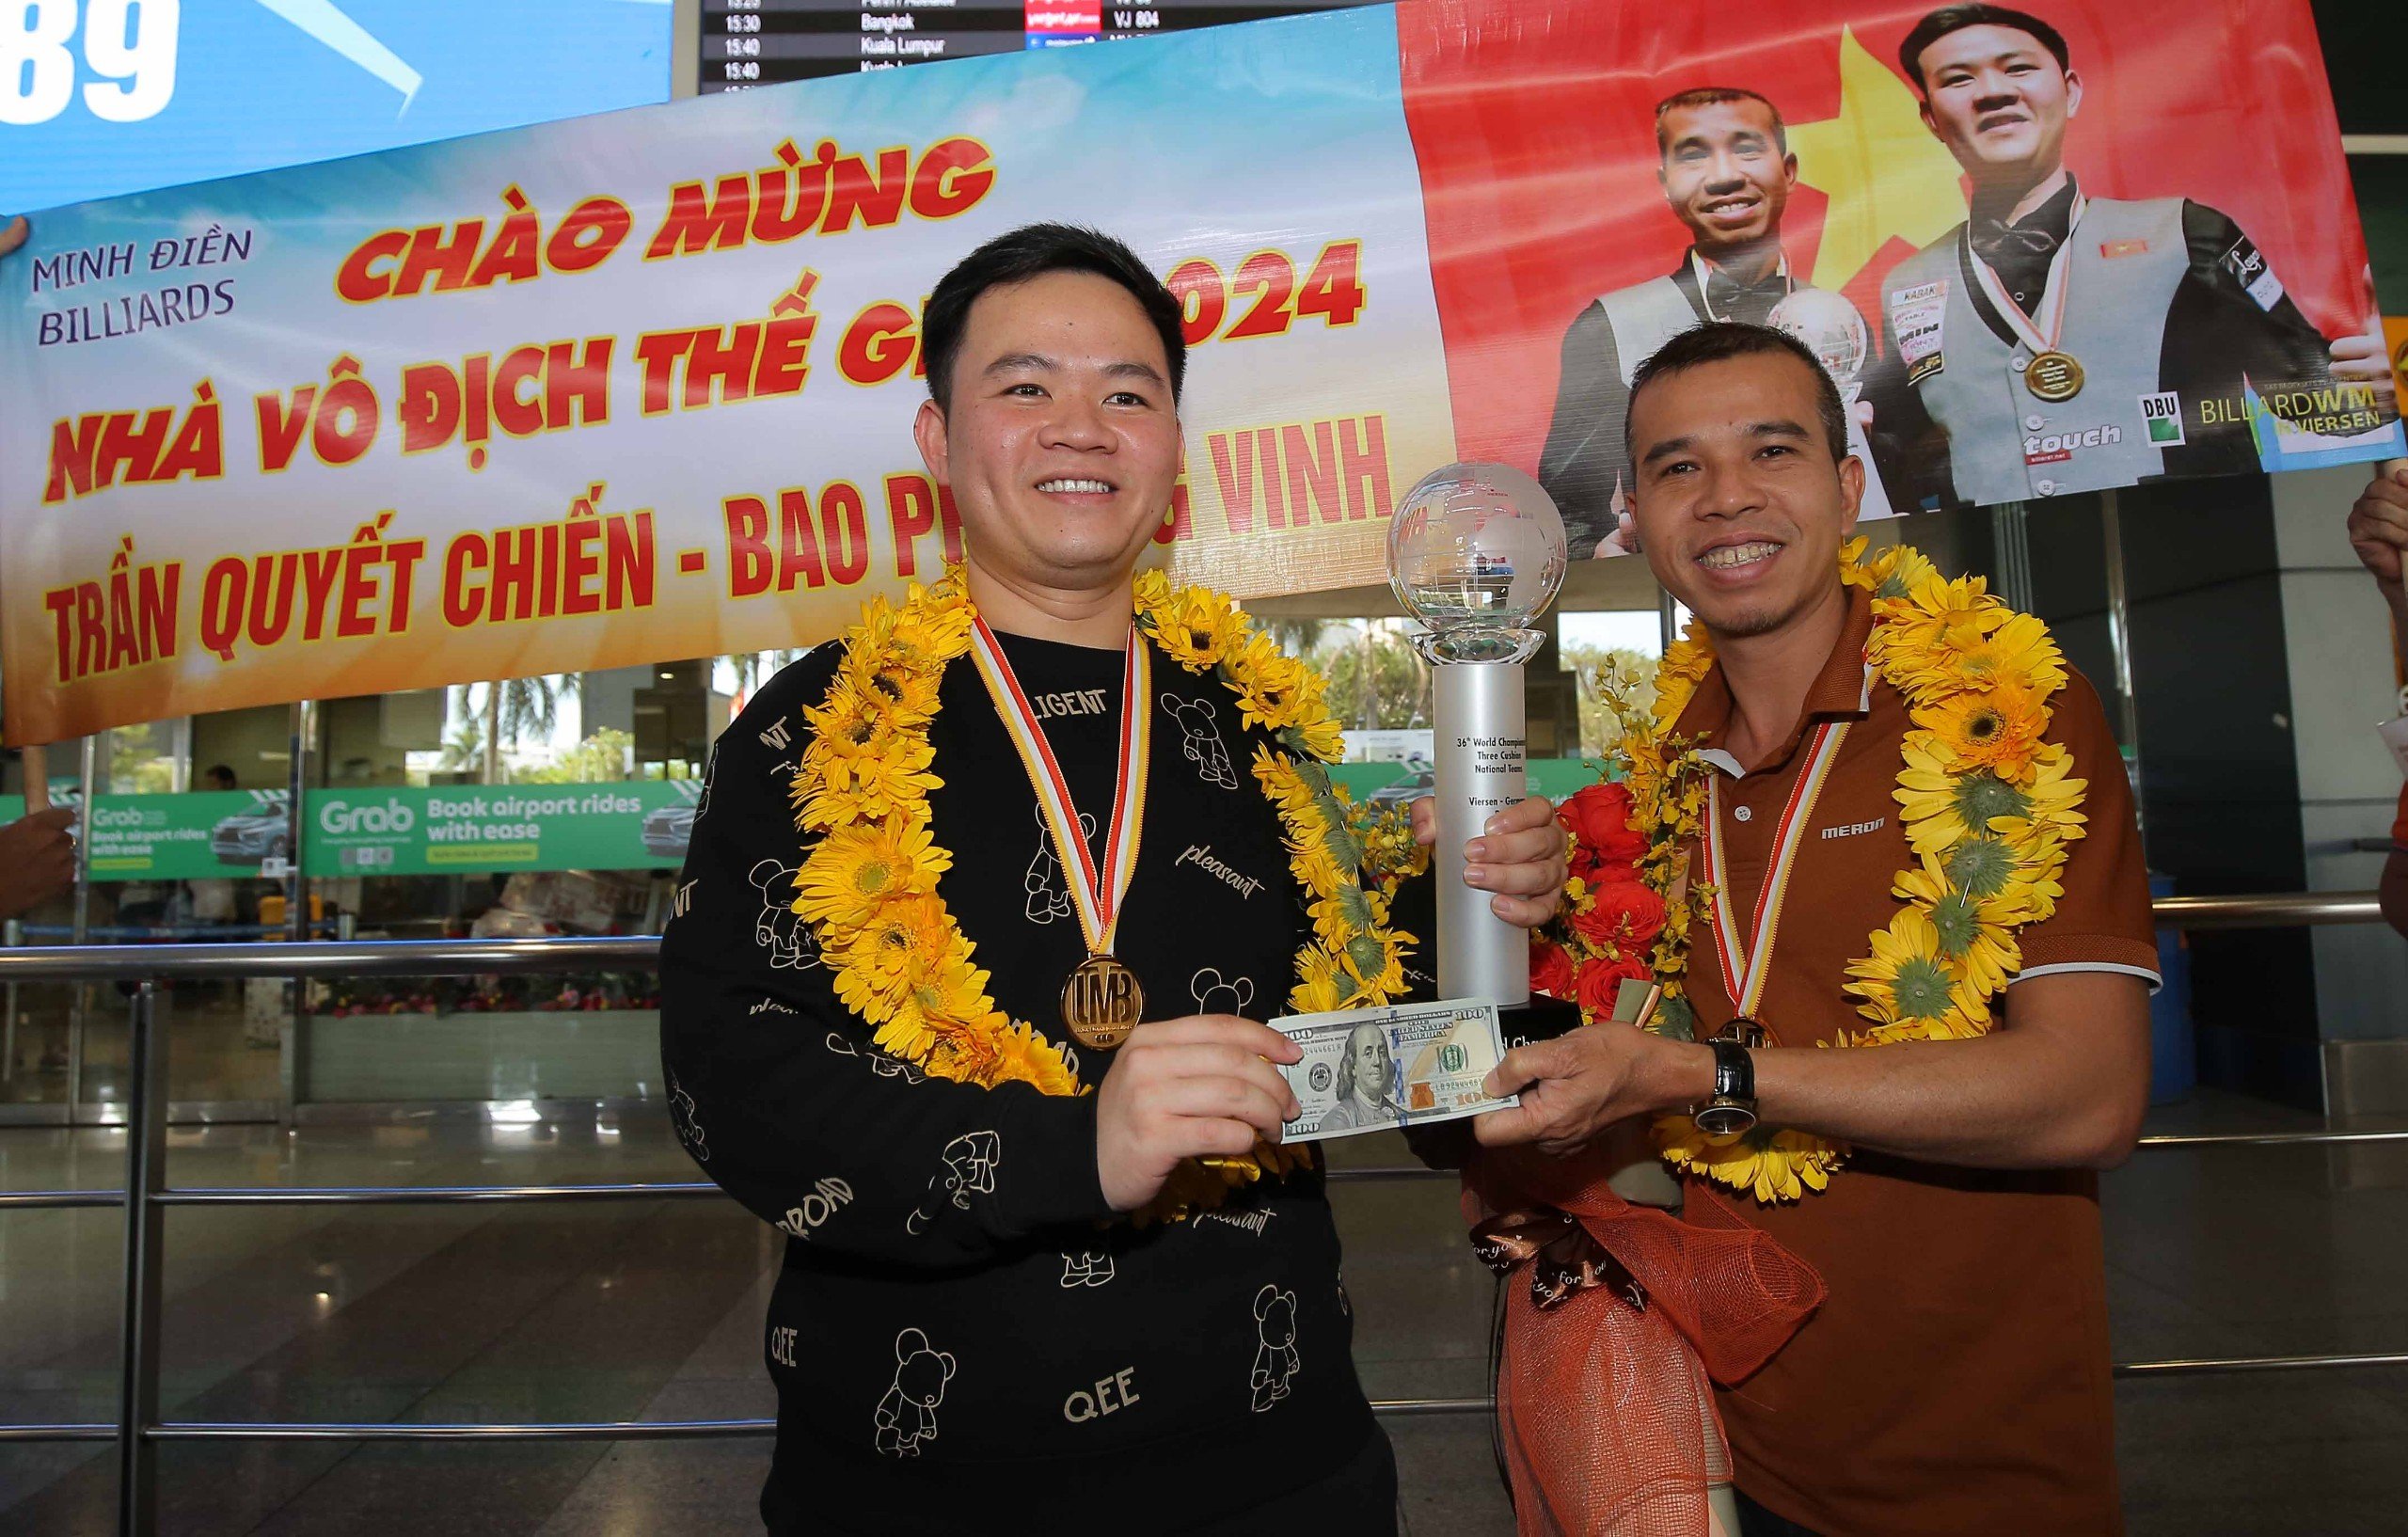 Hai nhà vô địch thế giới Trần Quyết Chiến và Bao Phương Vinh được chào đón rất nồng nhiệt- Ảnh 5.